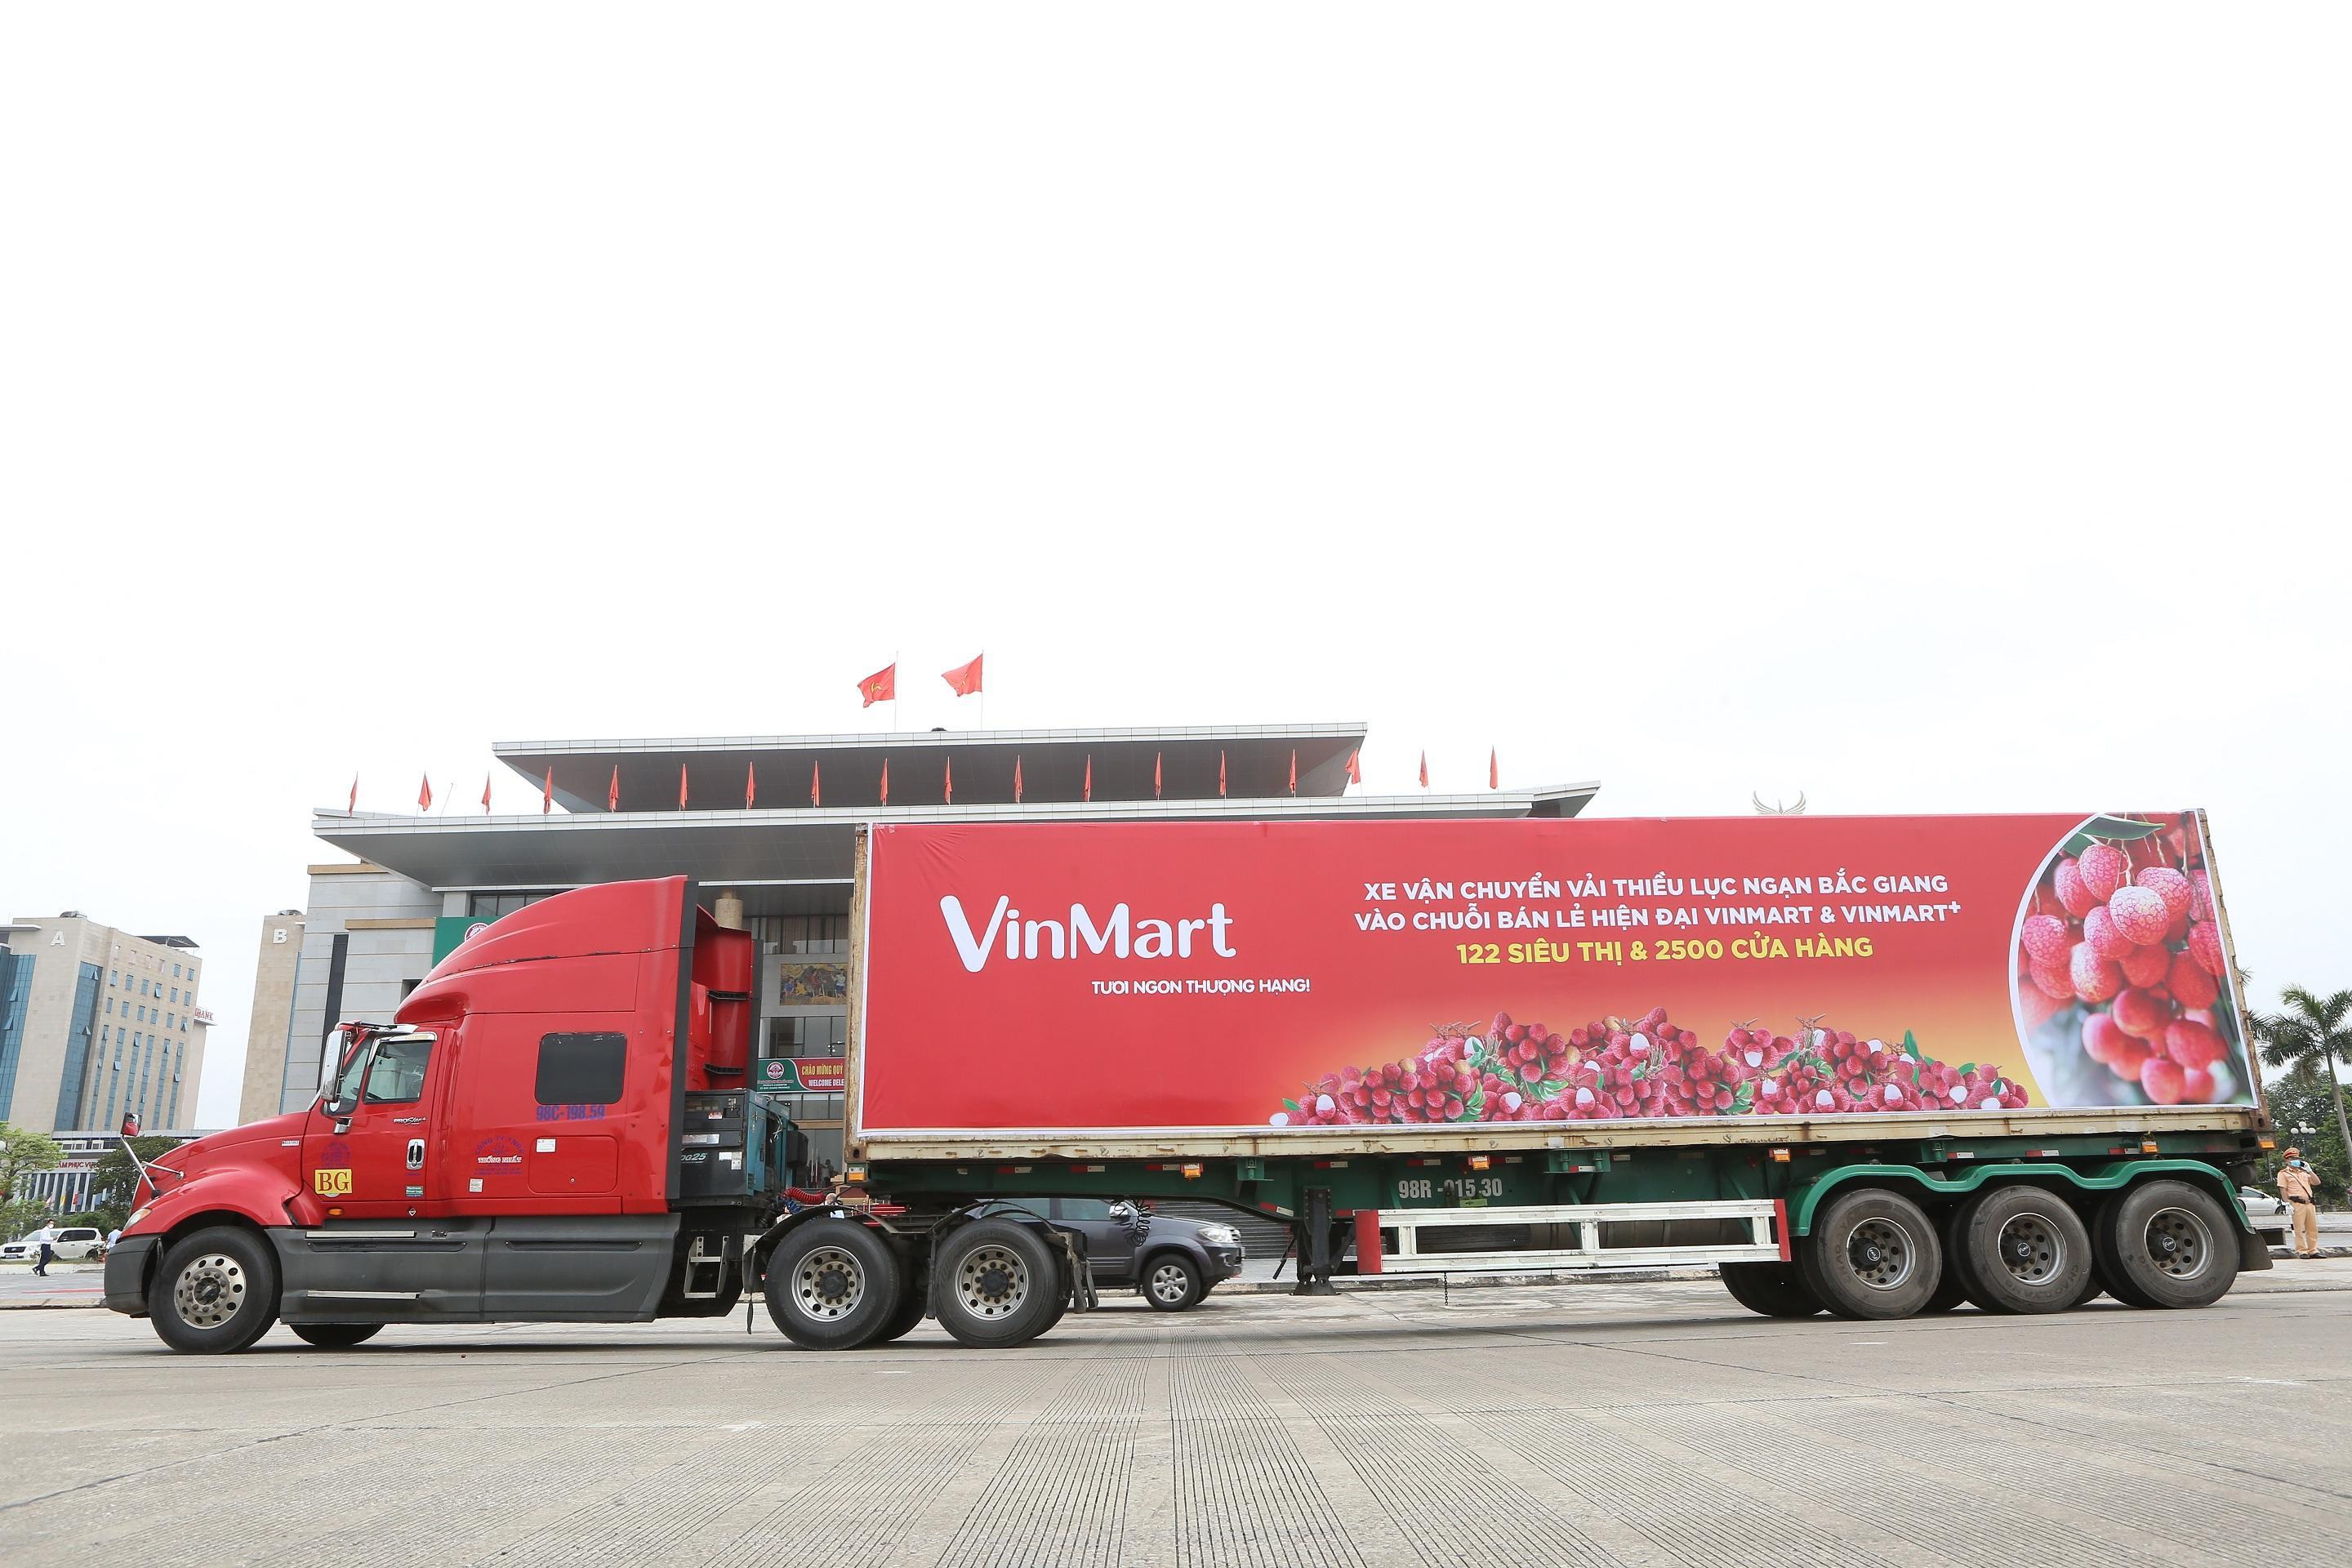 Rất nhiều sản phẩm nông sản của Bắc Giang có tại hệ thống VinMart chuỗi siêu thị bán lẻ hàng đầu Việt Nam